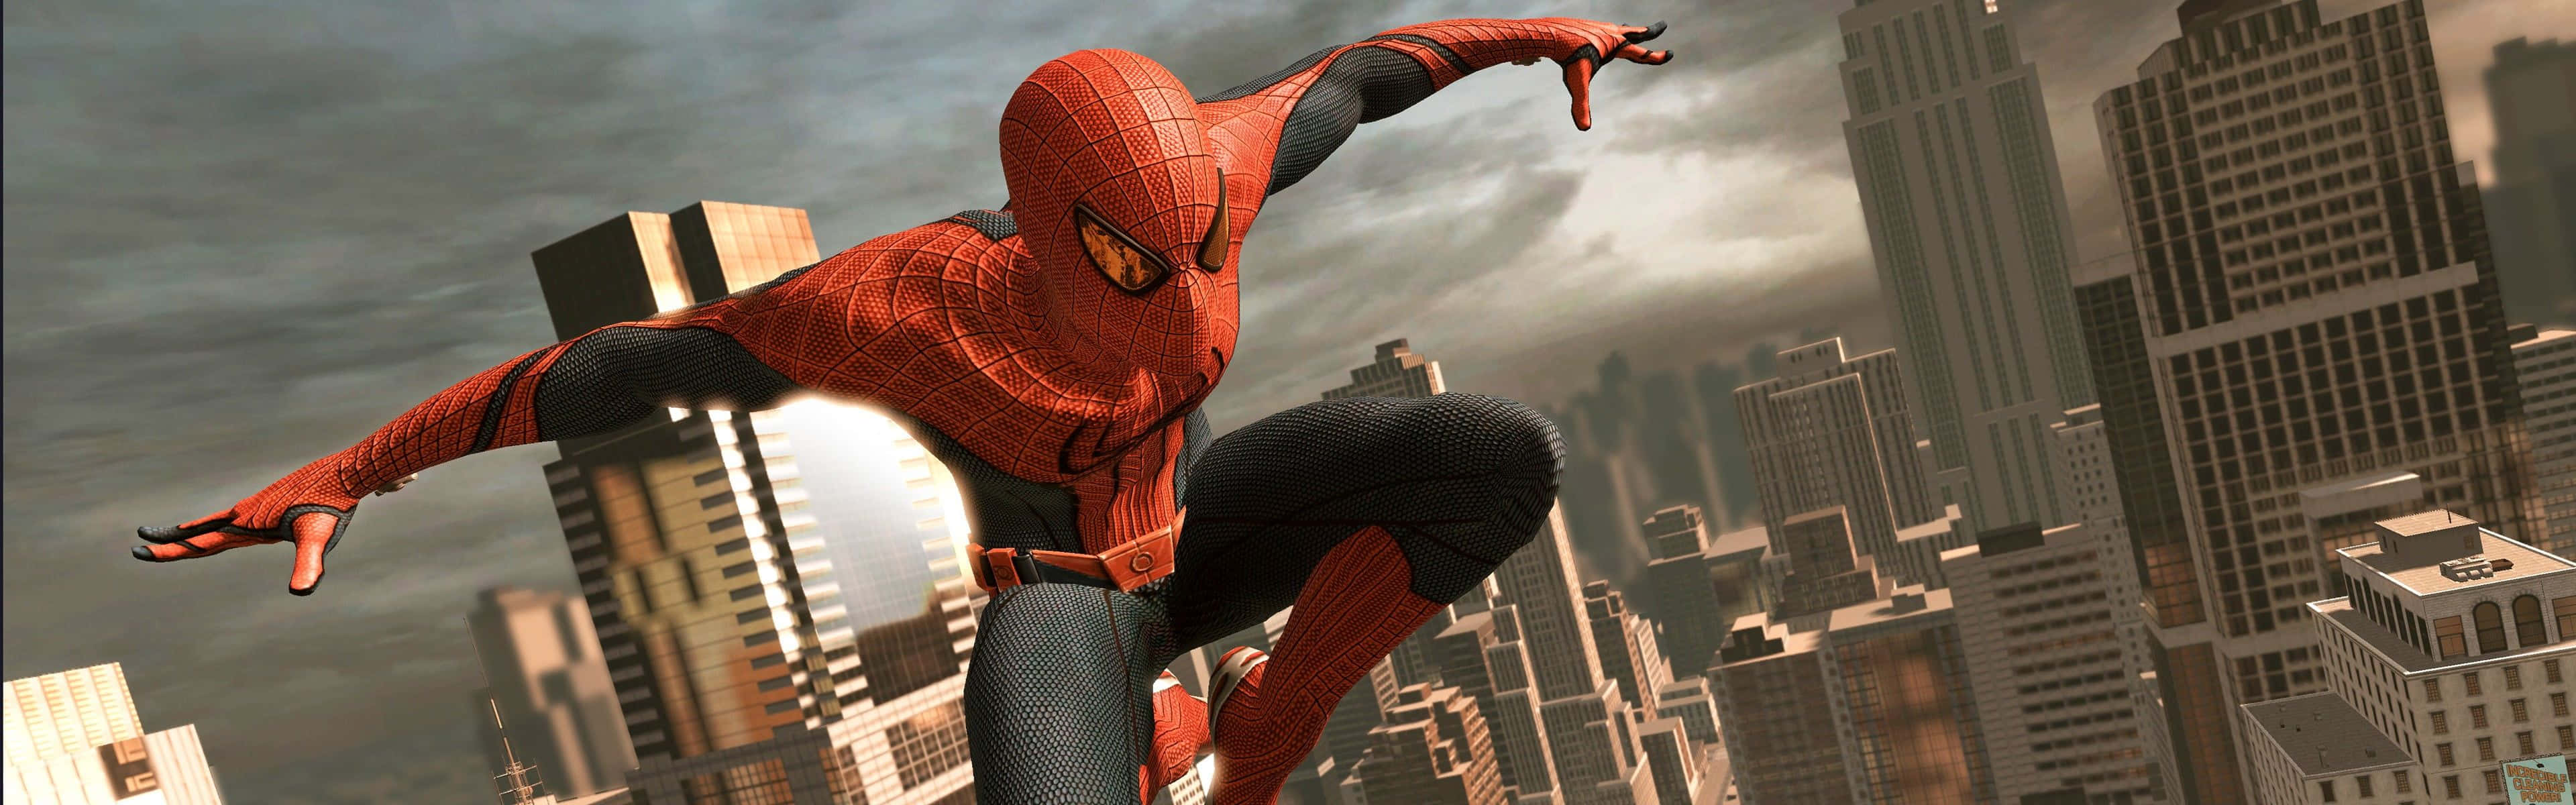 Dererstaunliche Spider-man - Bildschirmfoto Wallpaper